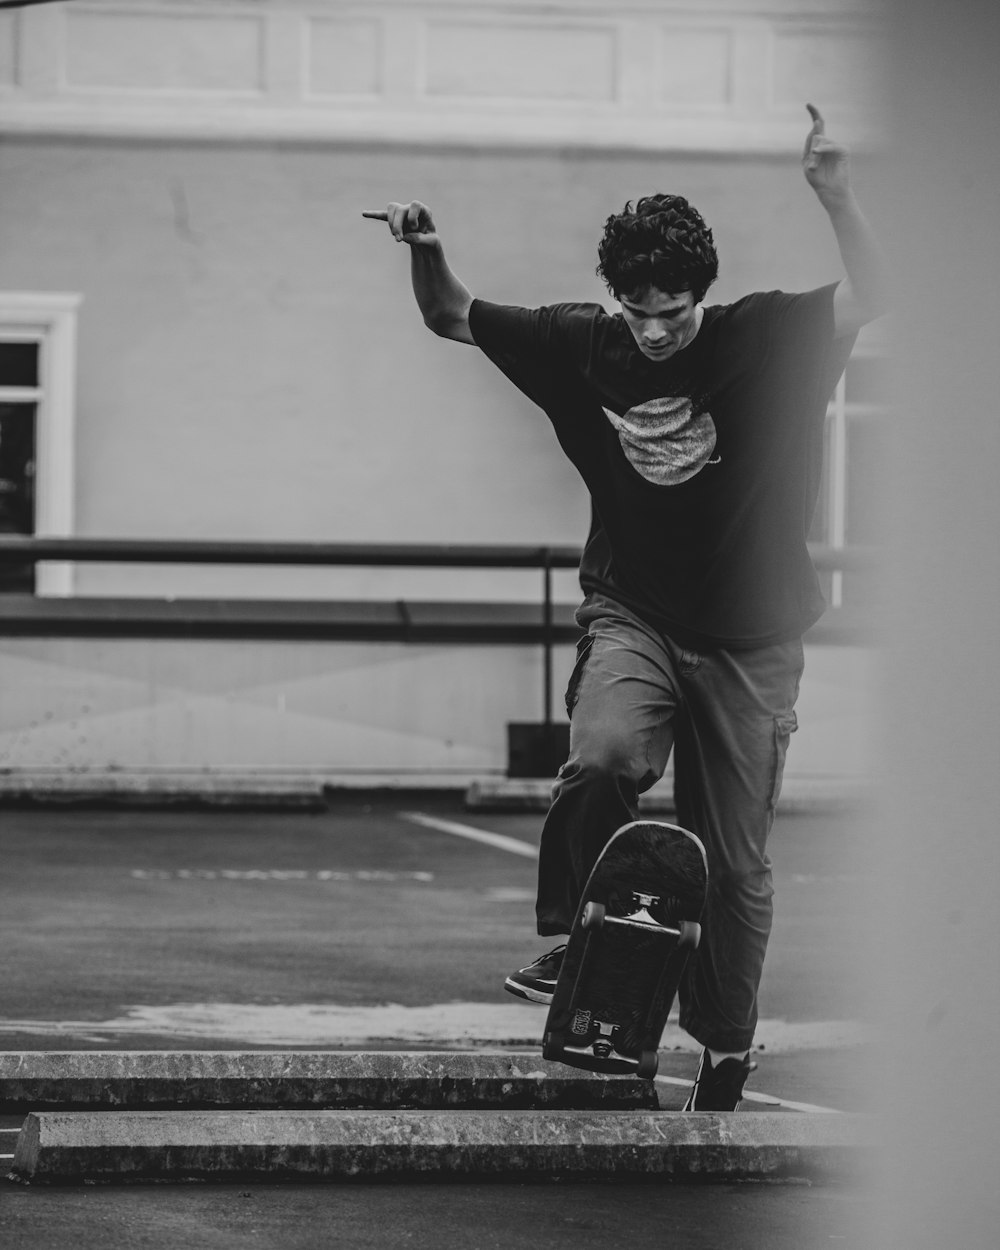 검은 긴 소매 셔츠와 바지를 입은 남자가 그레이스케일 사진에서 스케이트보드에 앉아 있다